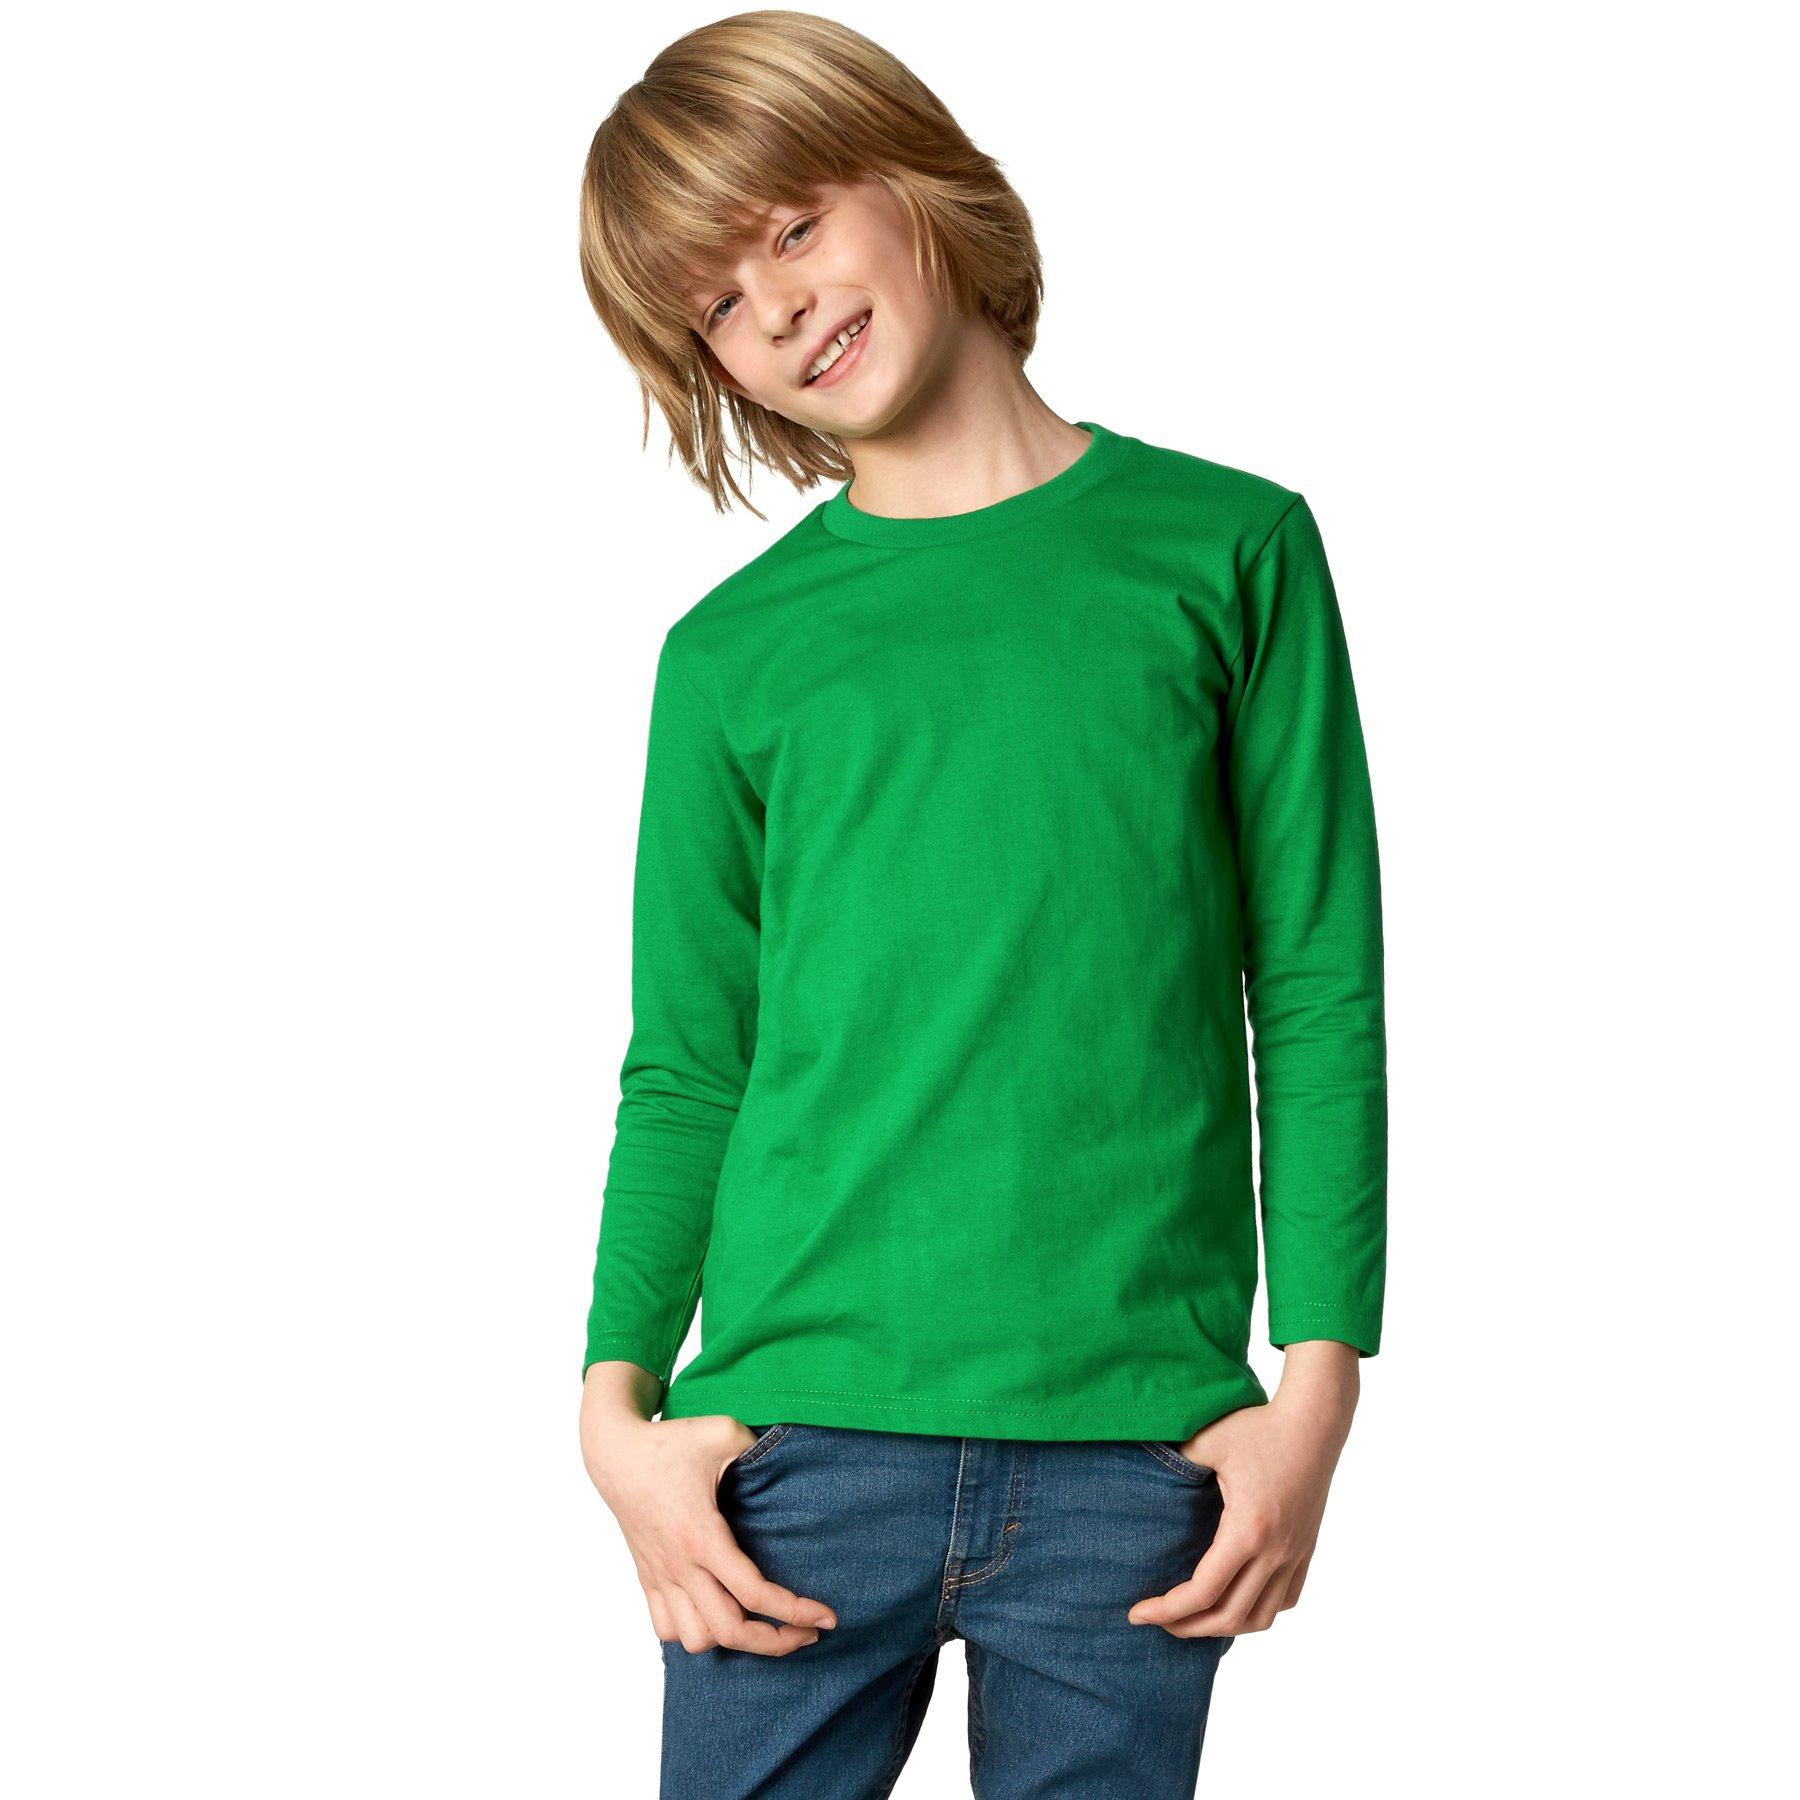 Langarm-shirt Kinder Jungen Grün 128 von Tectake